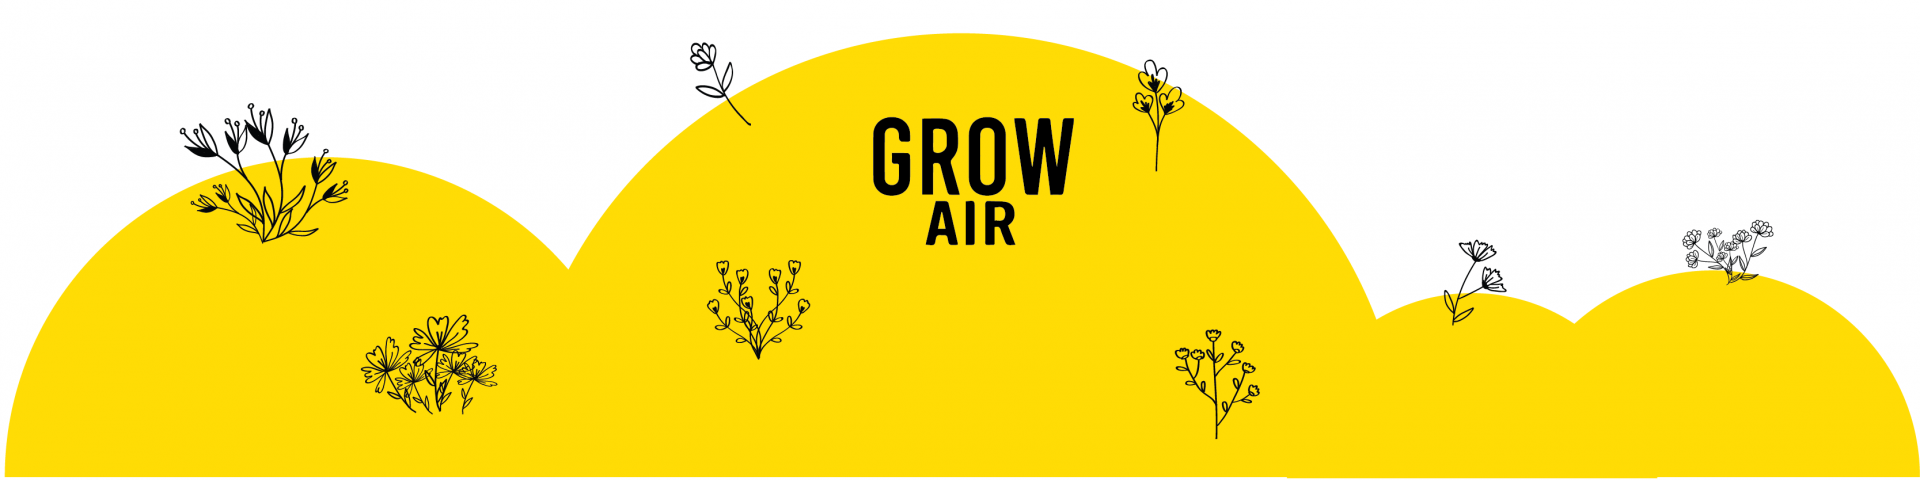 Grow Air